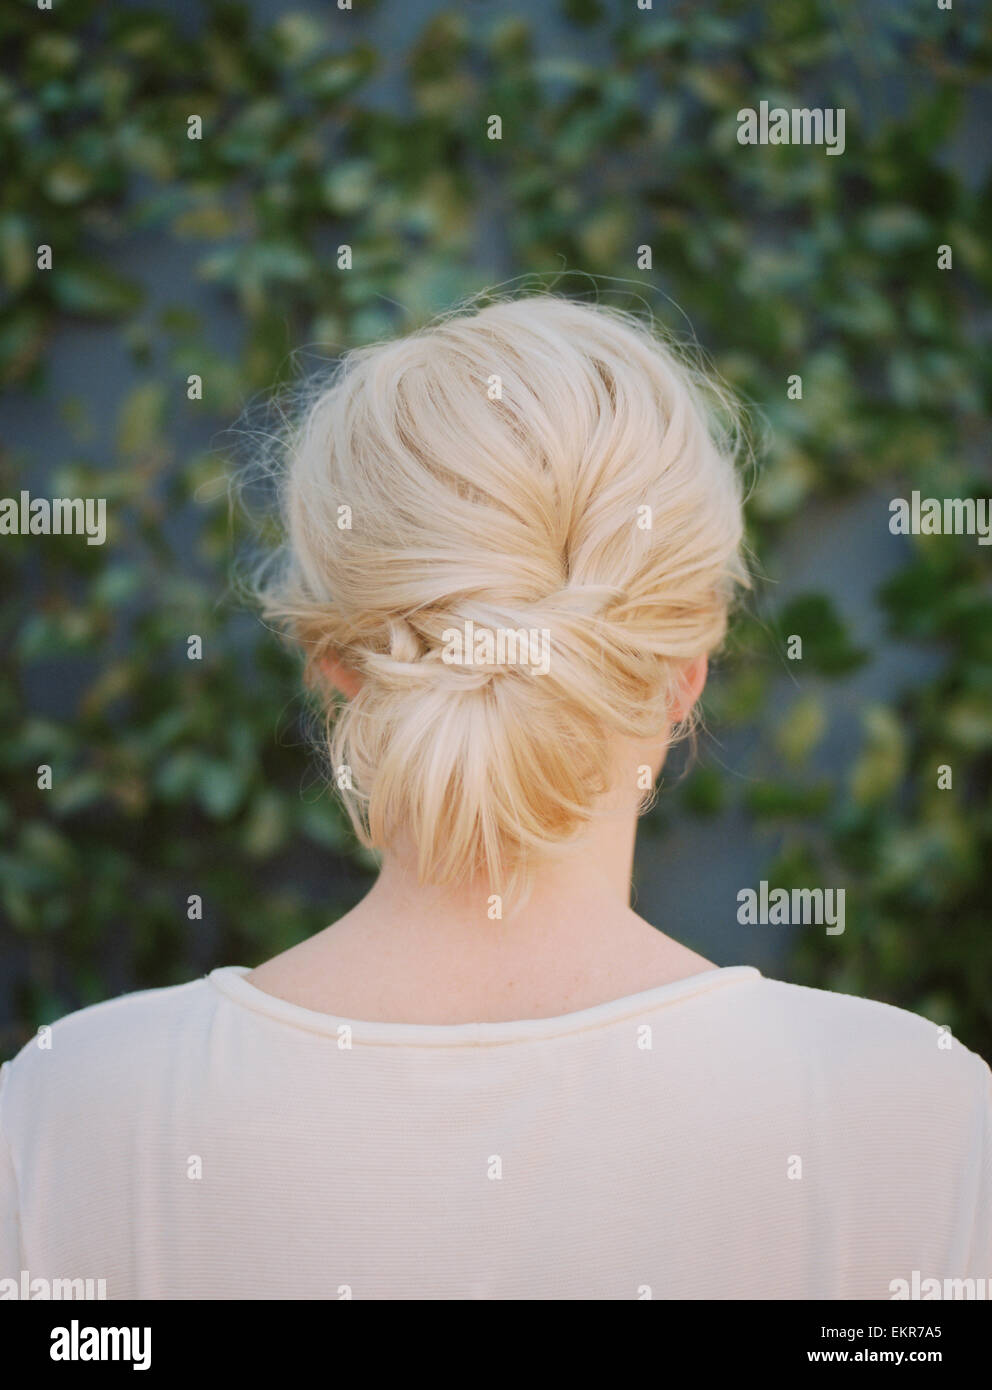 Une femme aux cheveux blonds disposés dans un noeud à la nuque. Banque D'Images